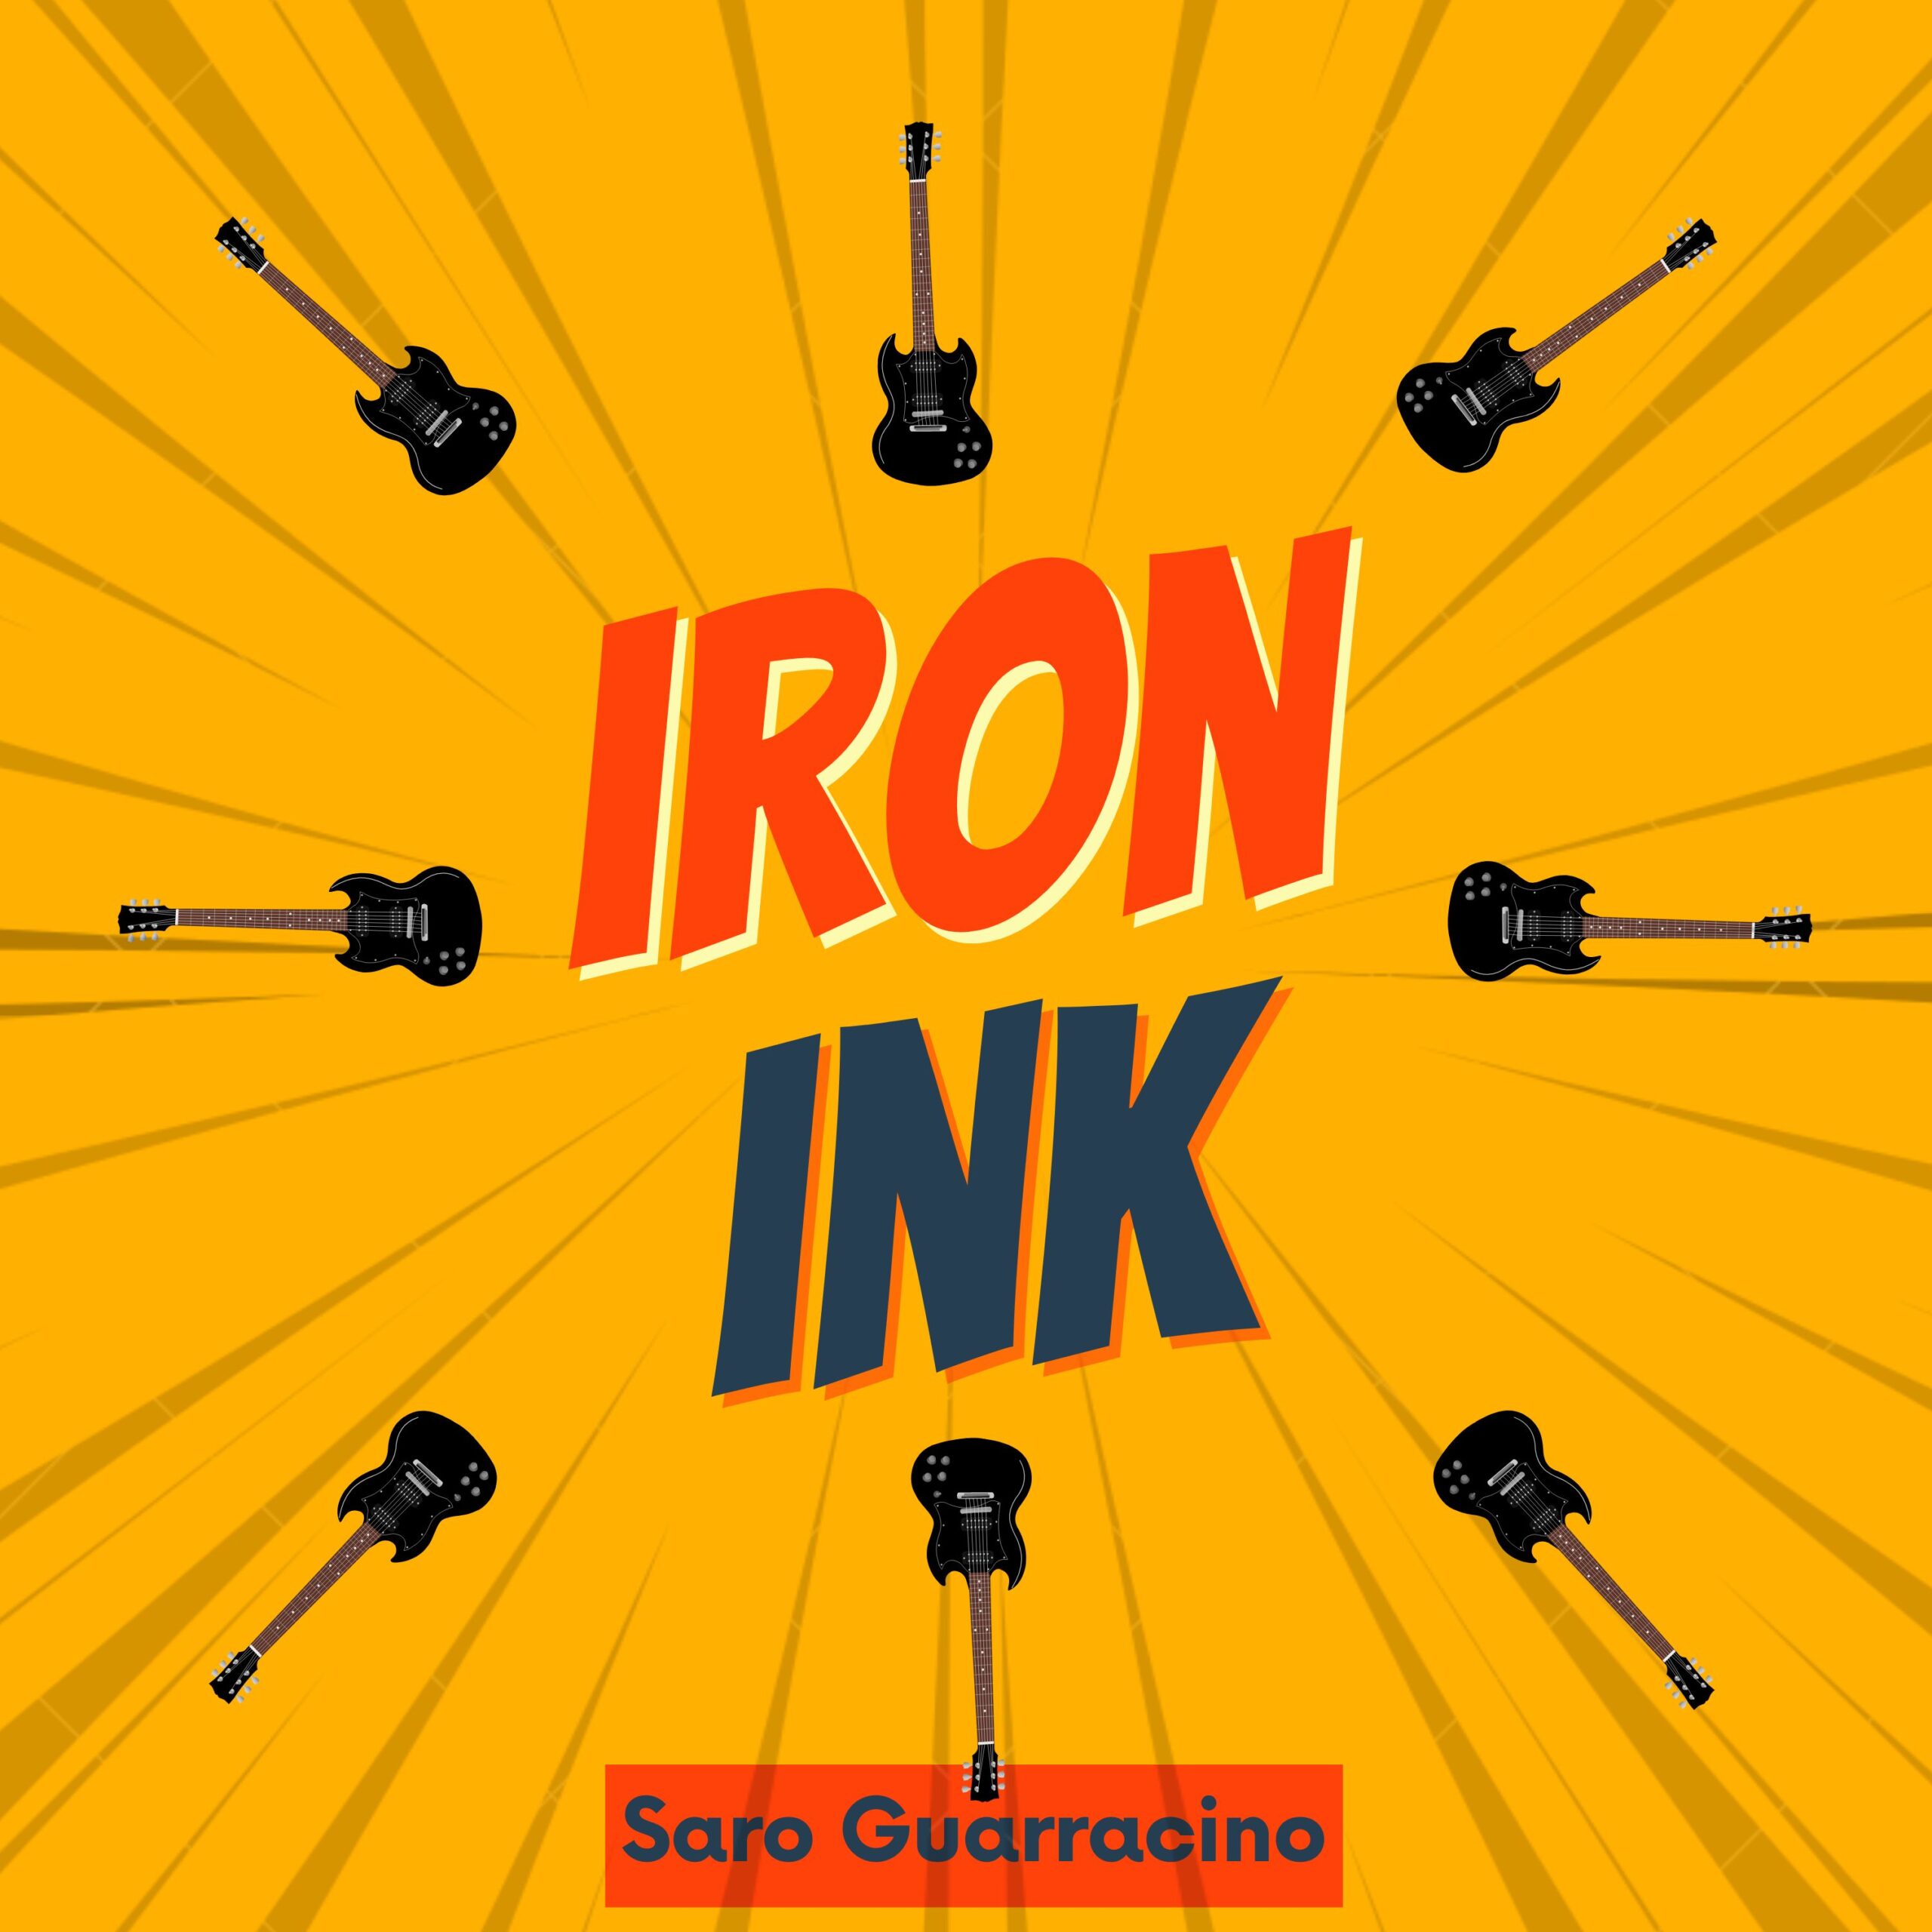 “Iron Ink”, è il nuovo brano del chitarrista Saro Guarracino